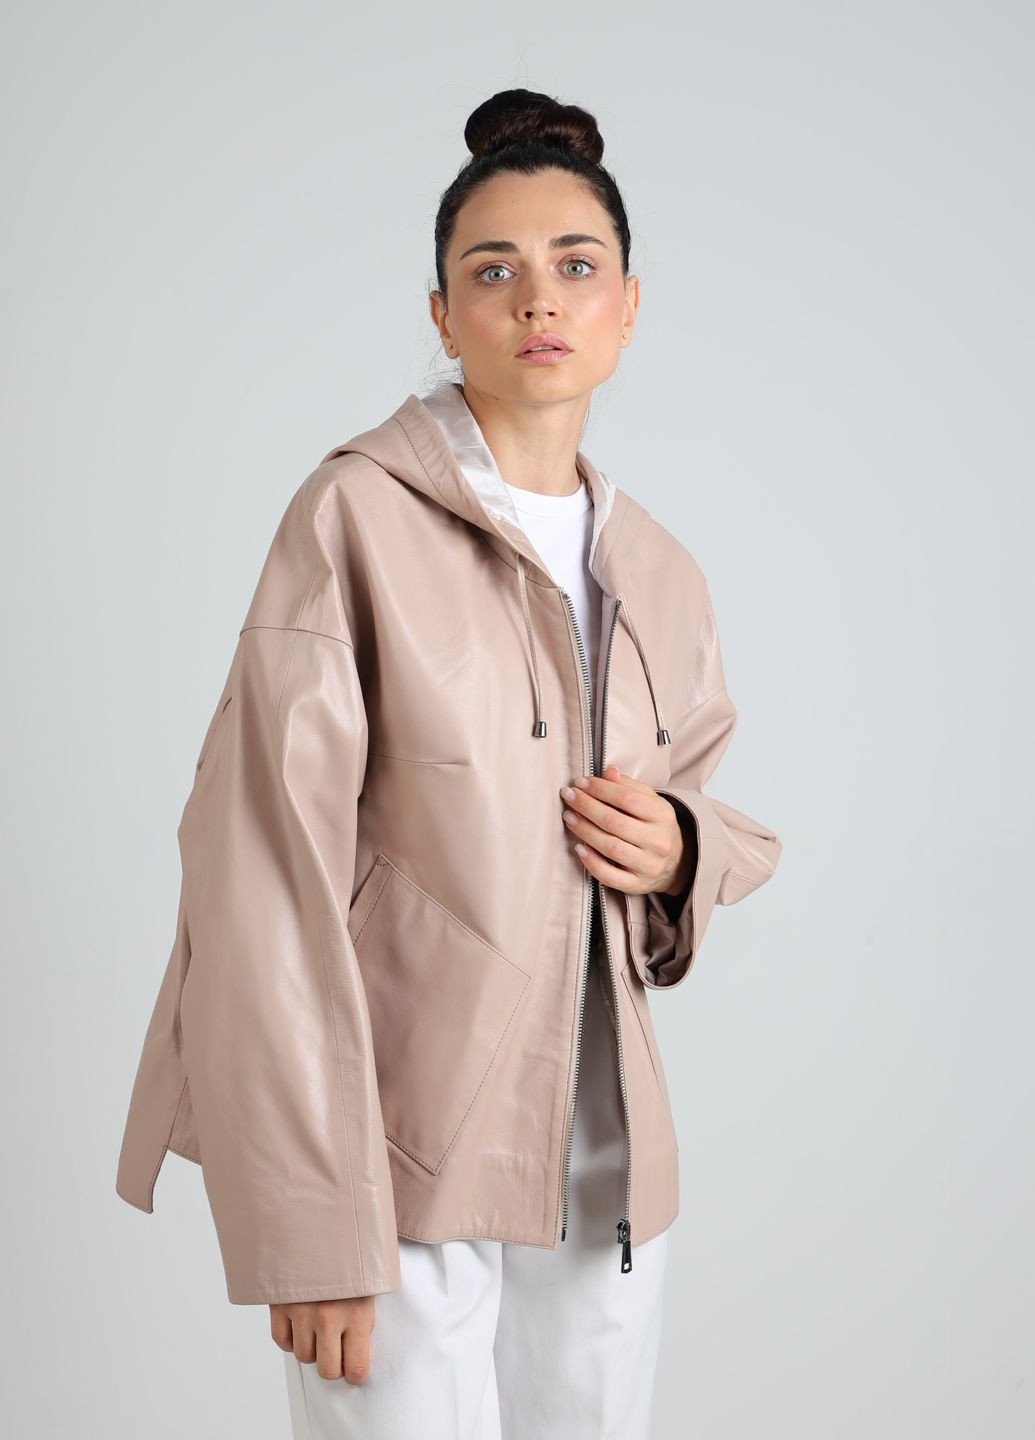 Бежевая демисезонная женская кожаная классическая куртка с капюшоном. 100% натуральная кожа. баталл и стандарт. fer2683 пудра беж Actors